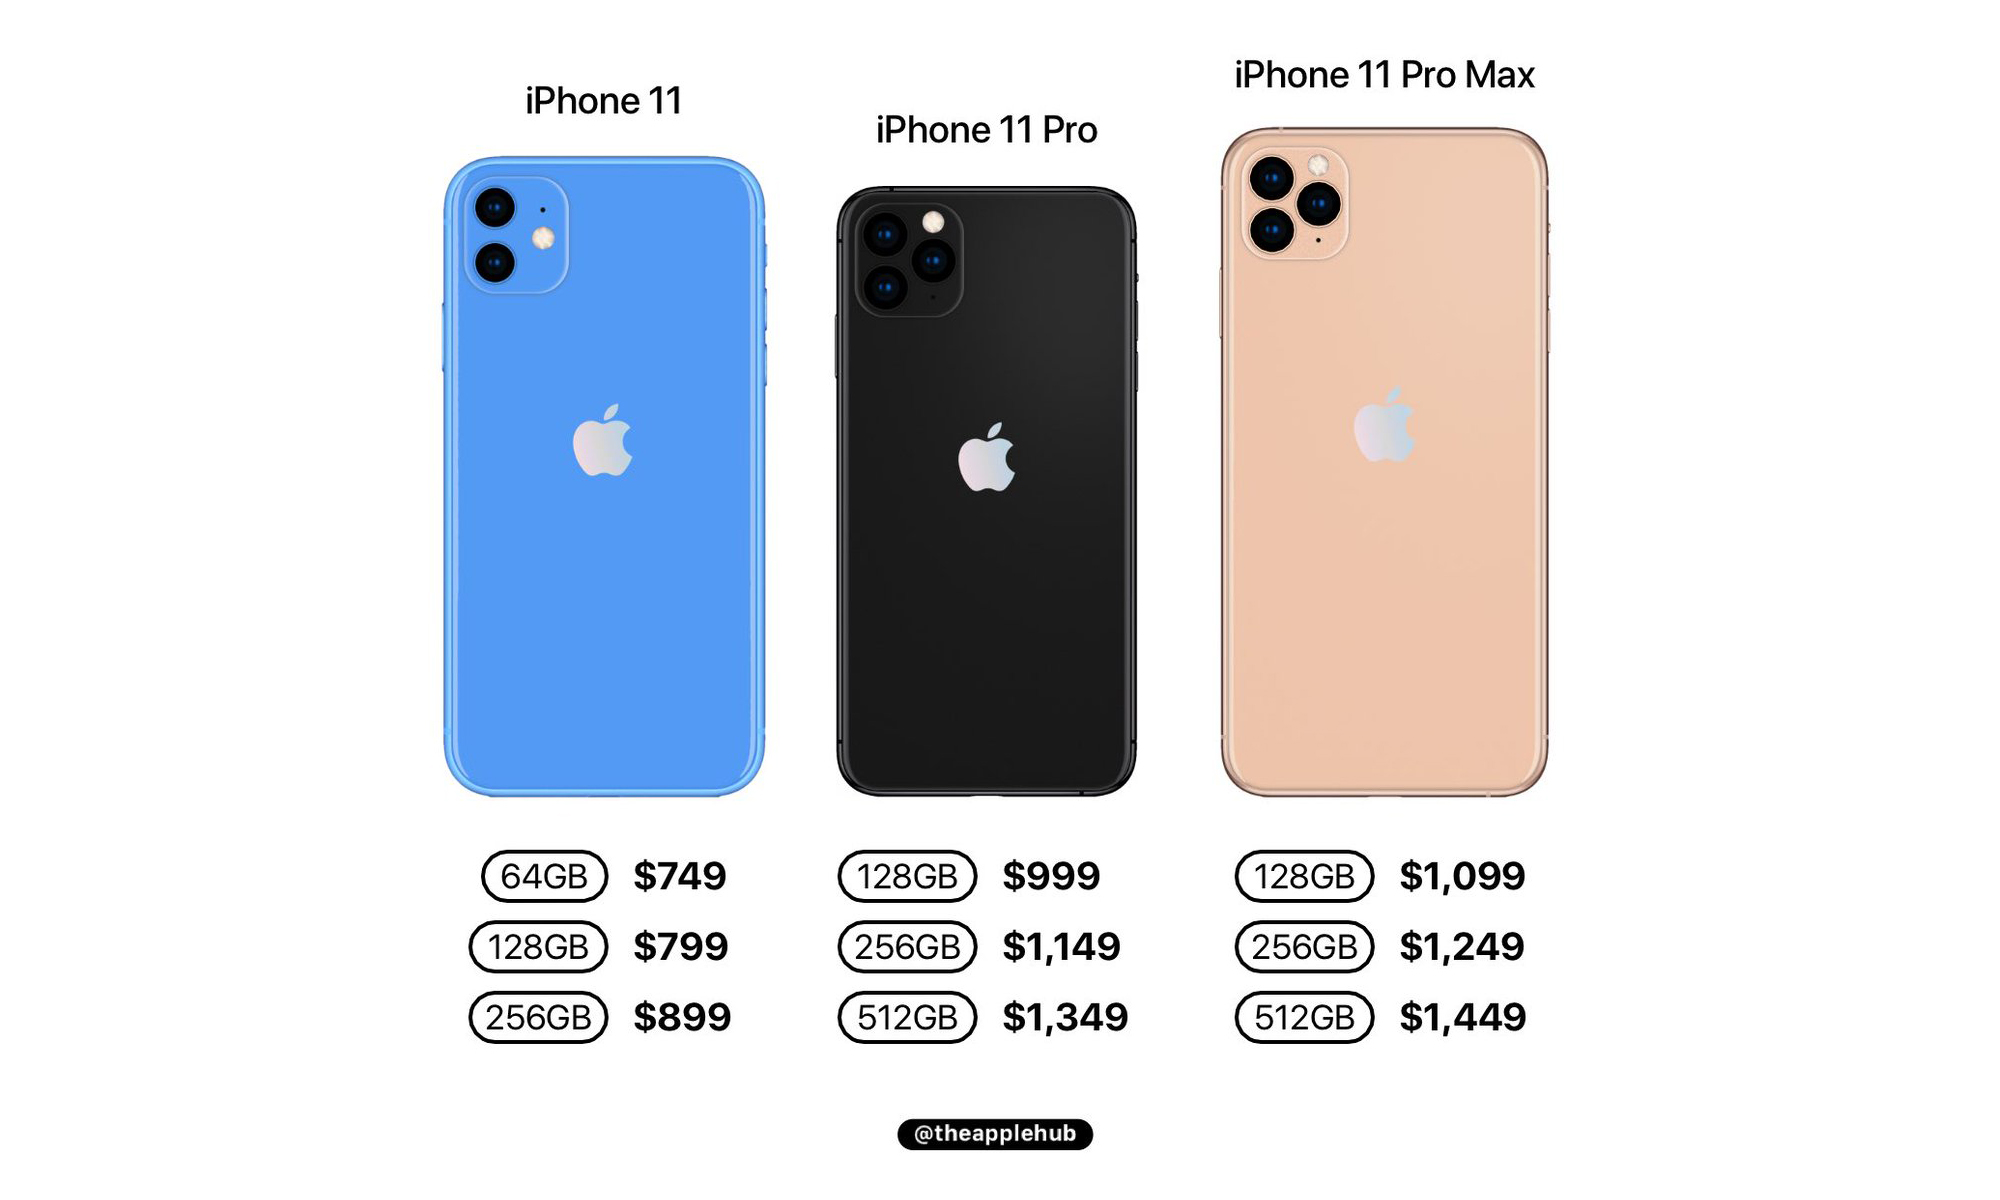 15 про макс размер сравнение. Айфон 11 и 11 про сравнение размеров. Iphone 11 габариты. Айфон 11 и 12 сравнение размеров. Айфон 11 про ркщмер сравнение.